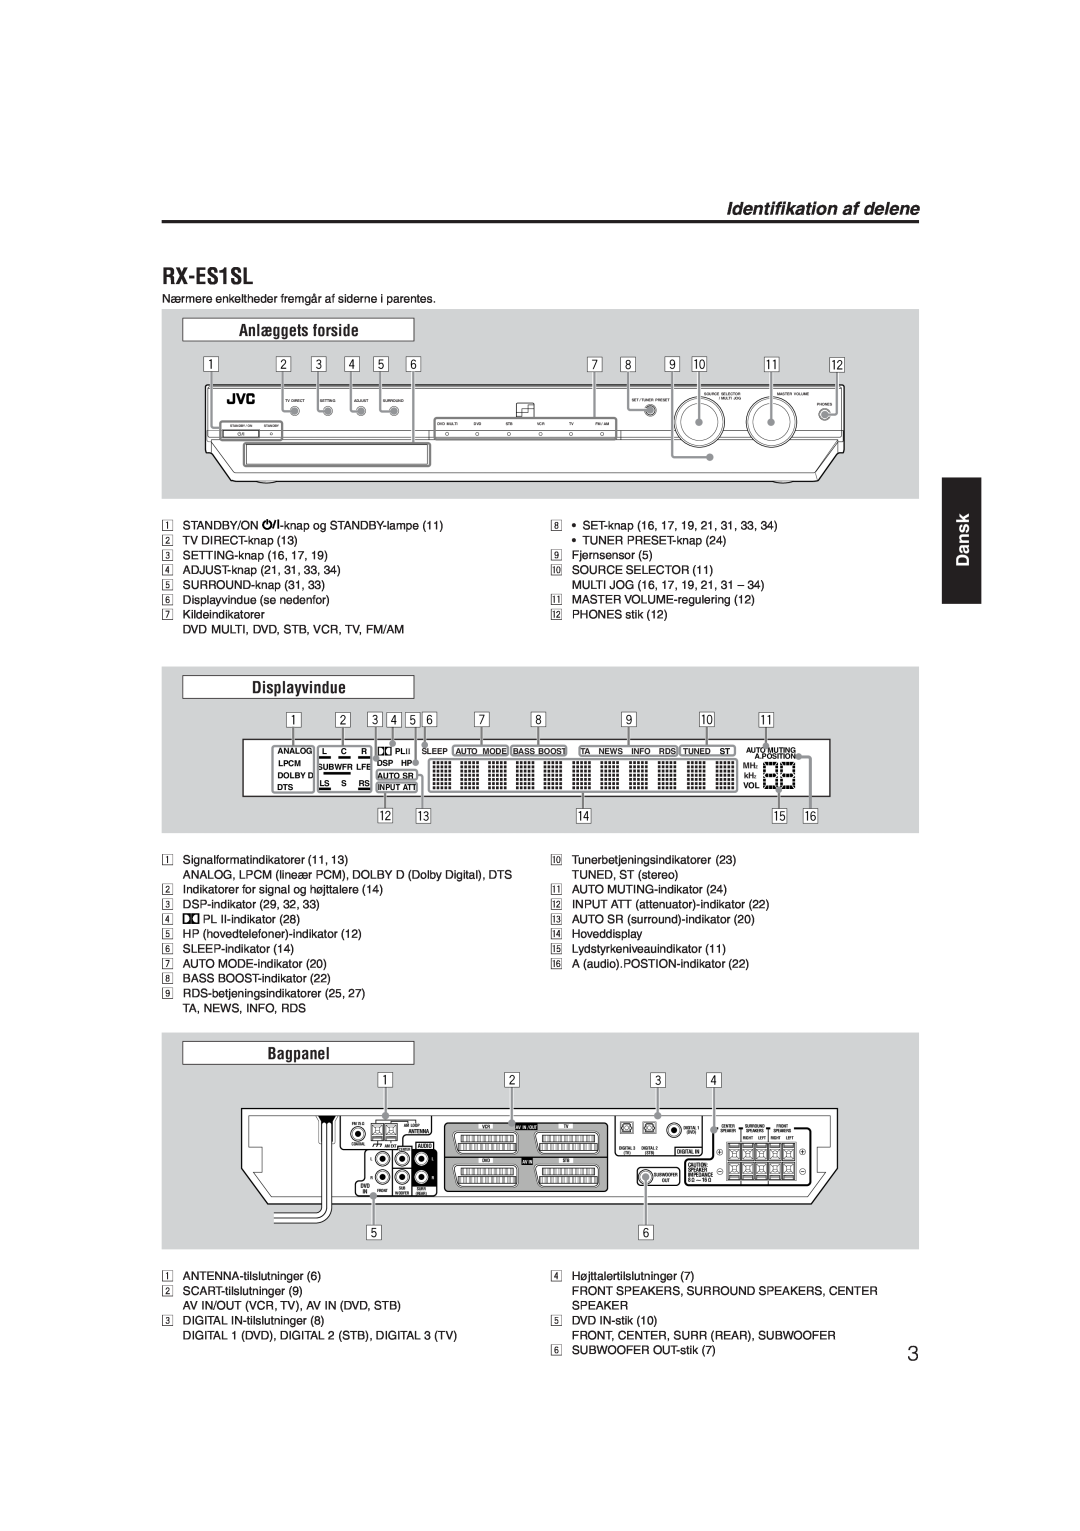 JVC RX-ES1SL manual Identifikation af delene, Dansk, Anlæggets forside, Bagpanel 